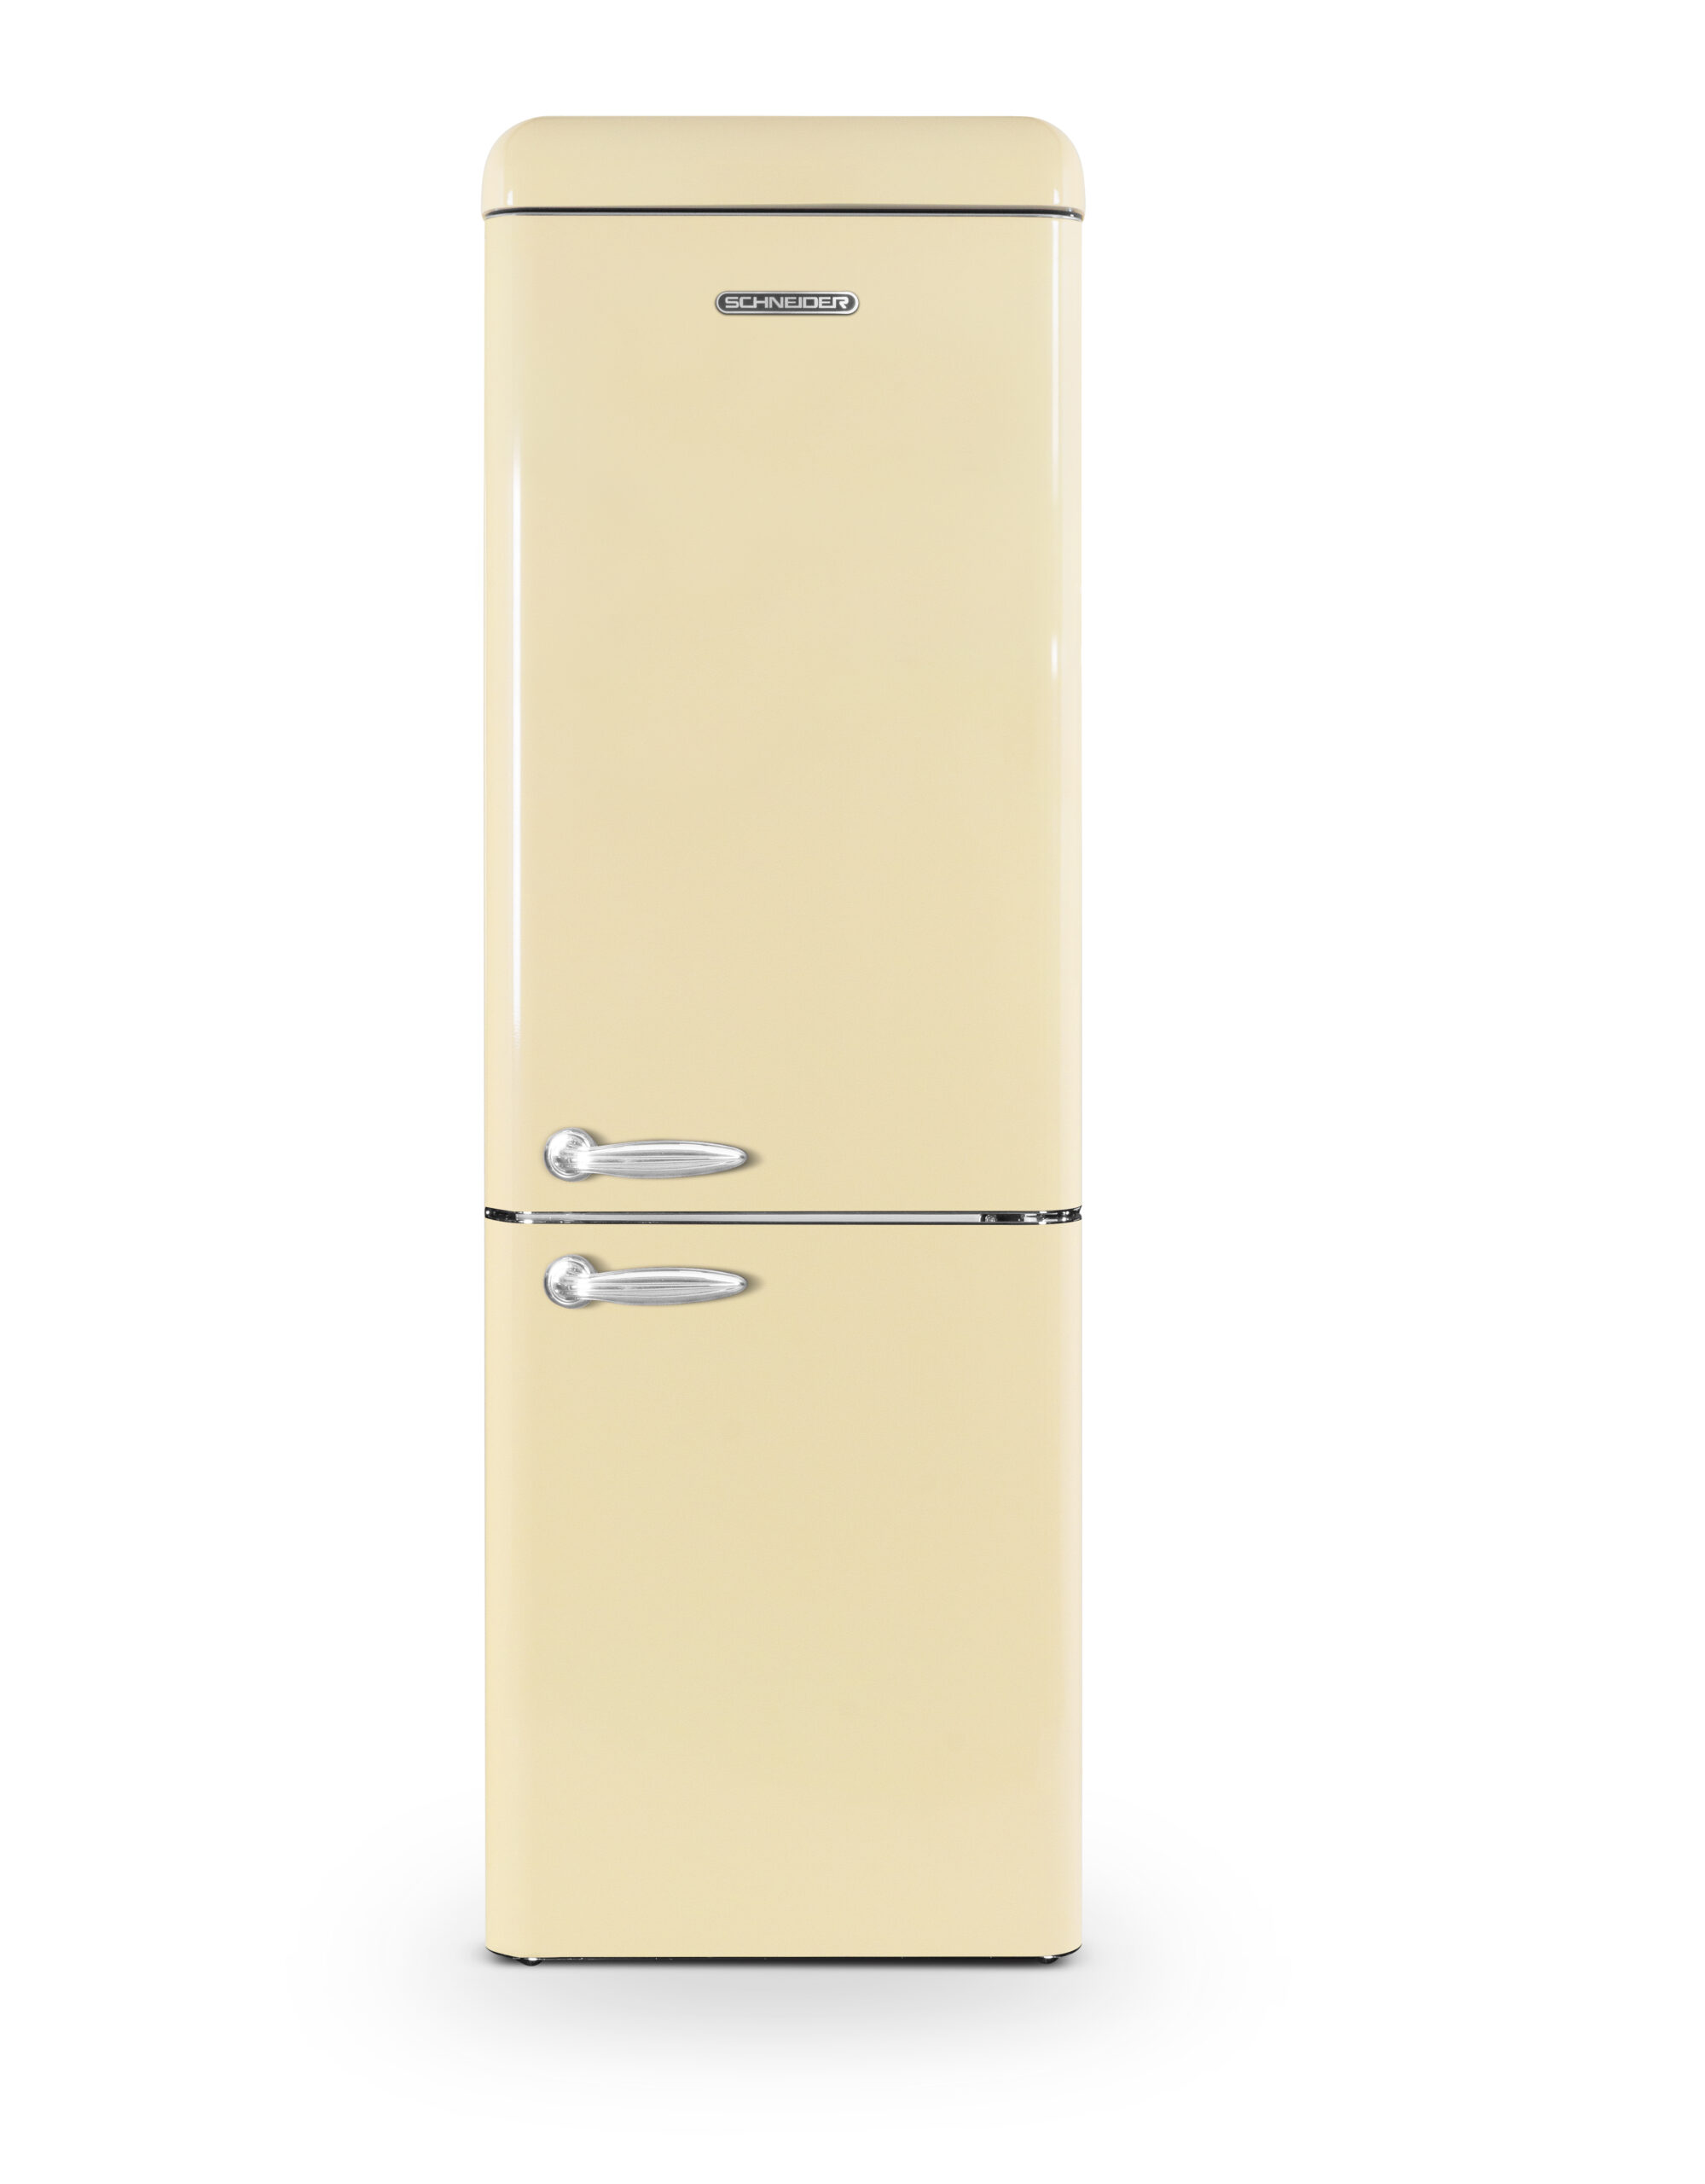 Frigidaire : des réfrigérateurs au design rétro